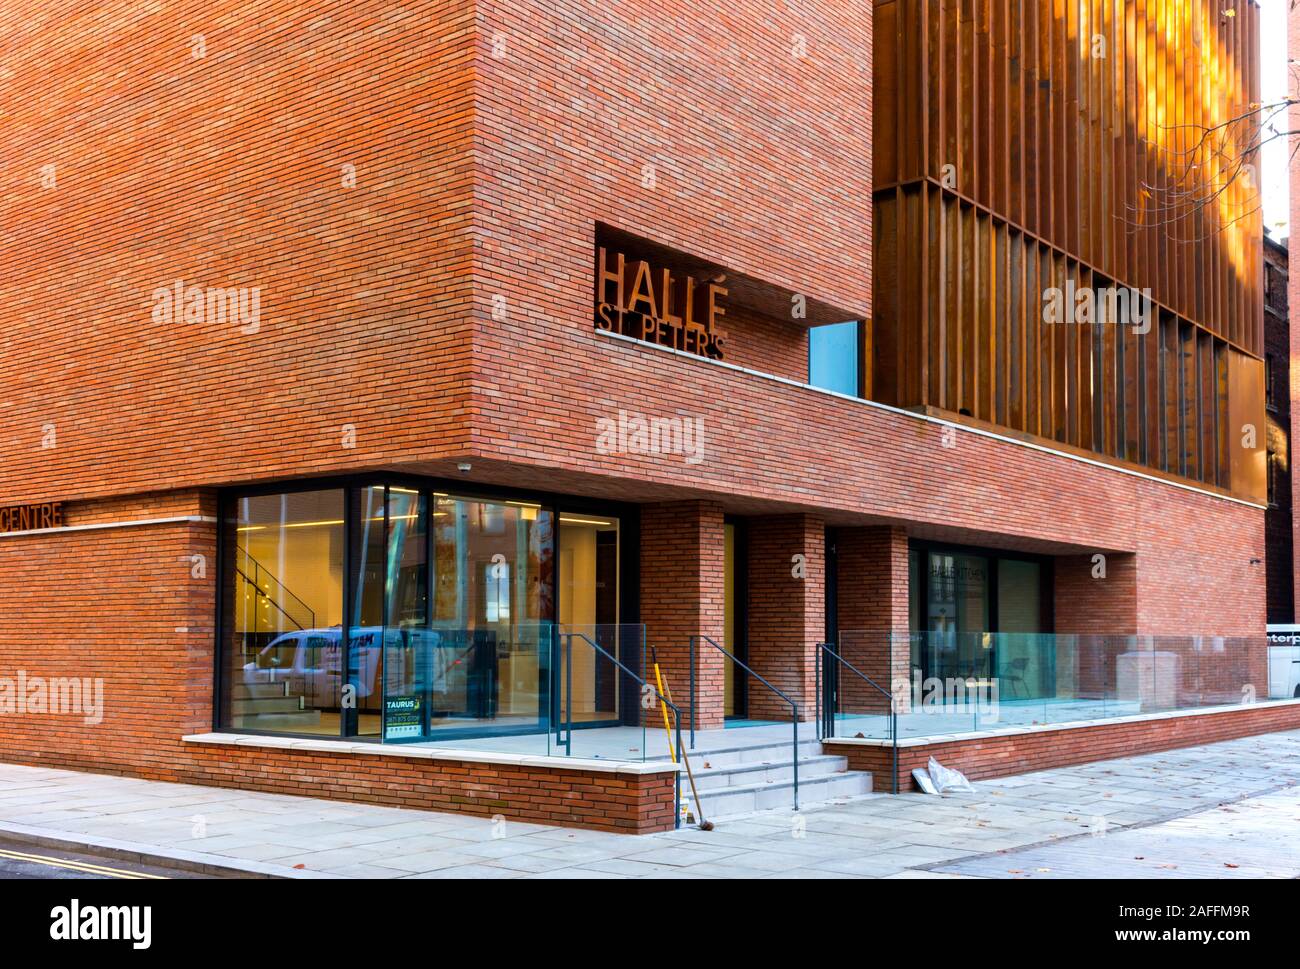 Le Centre d'extension à Oglesby Hallé (Stephenson, 2019) Studio salle de découpe, carrés, 4Rs Salford-manchester Manchester, Angleterre, RU Banque D'Images